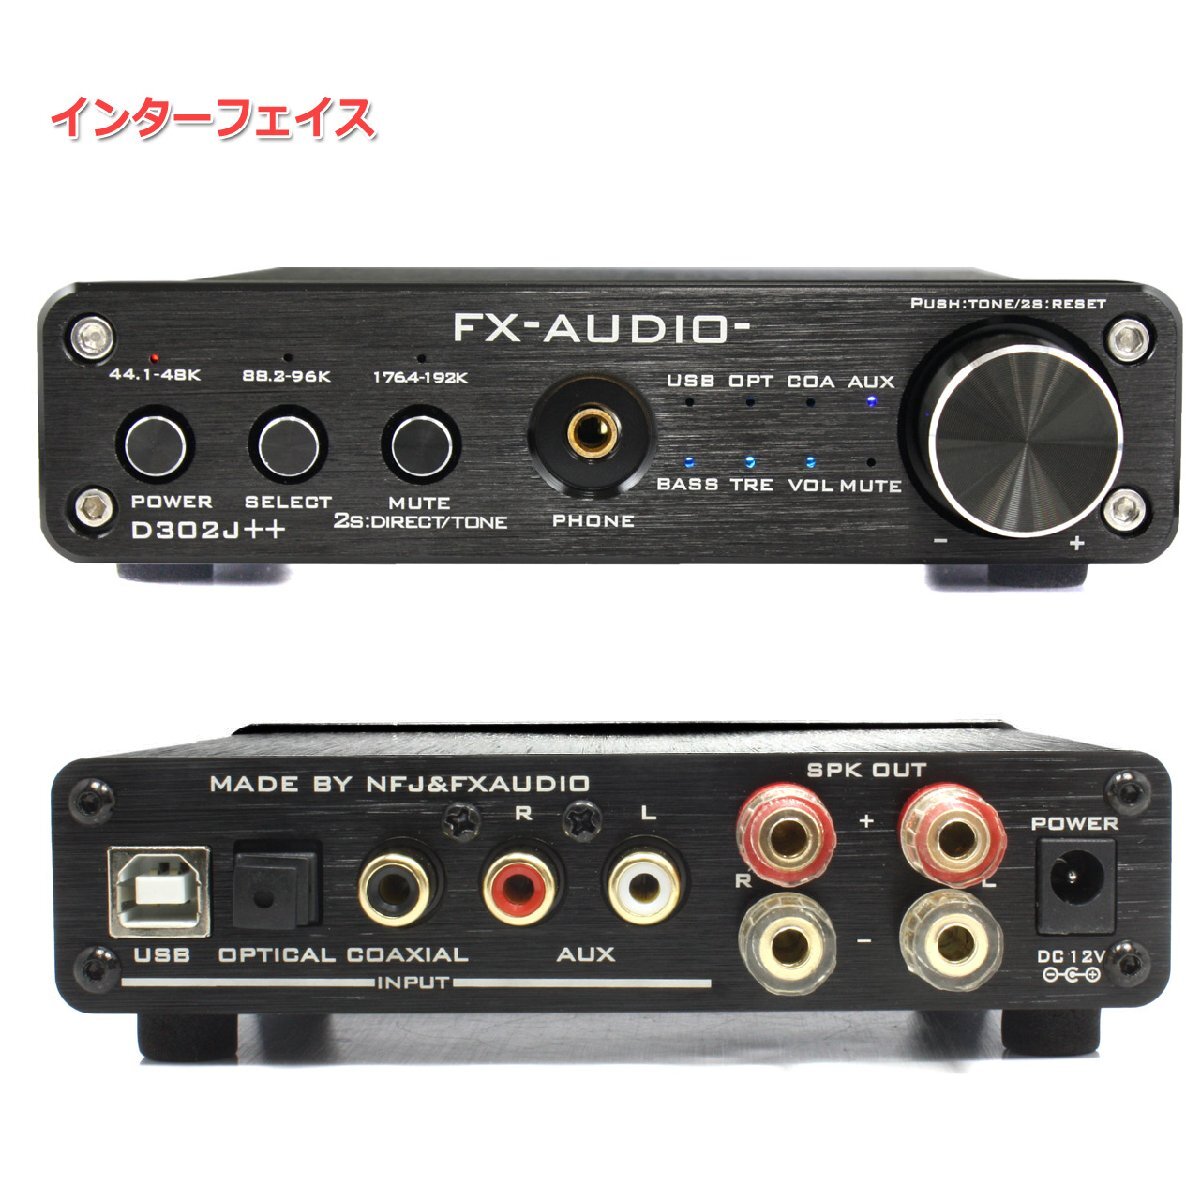 FX-AUDIO- D302J++[ブラック] ハイレゾ対応デジタルアナログ4系統入力・フルデジタルアンプ USB 光 オプティカル 同軸 最大24bit 192kHz_画像2